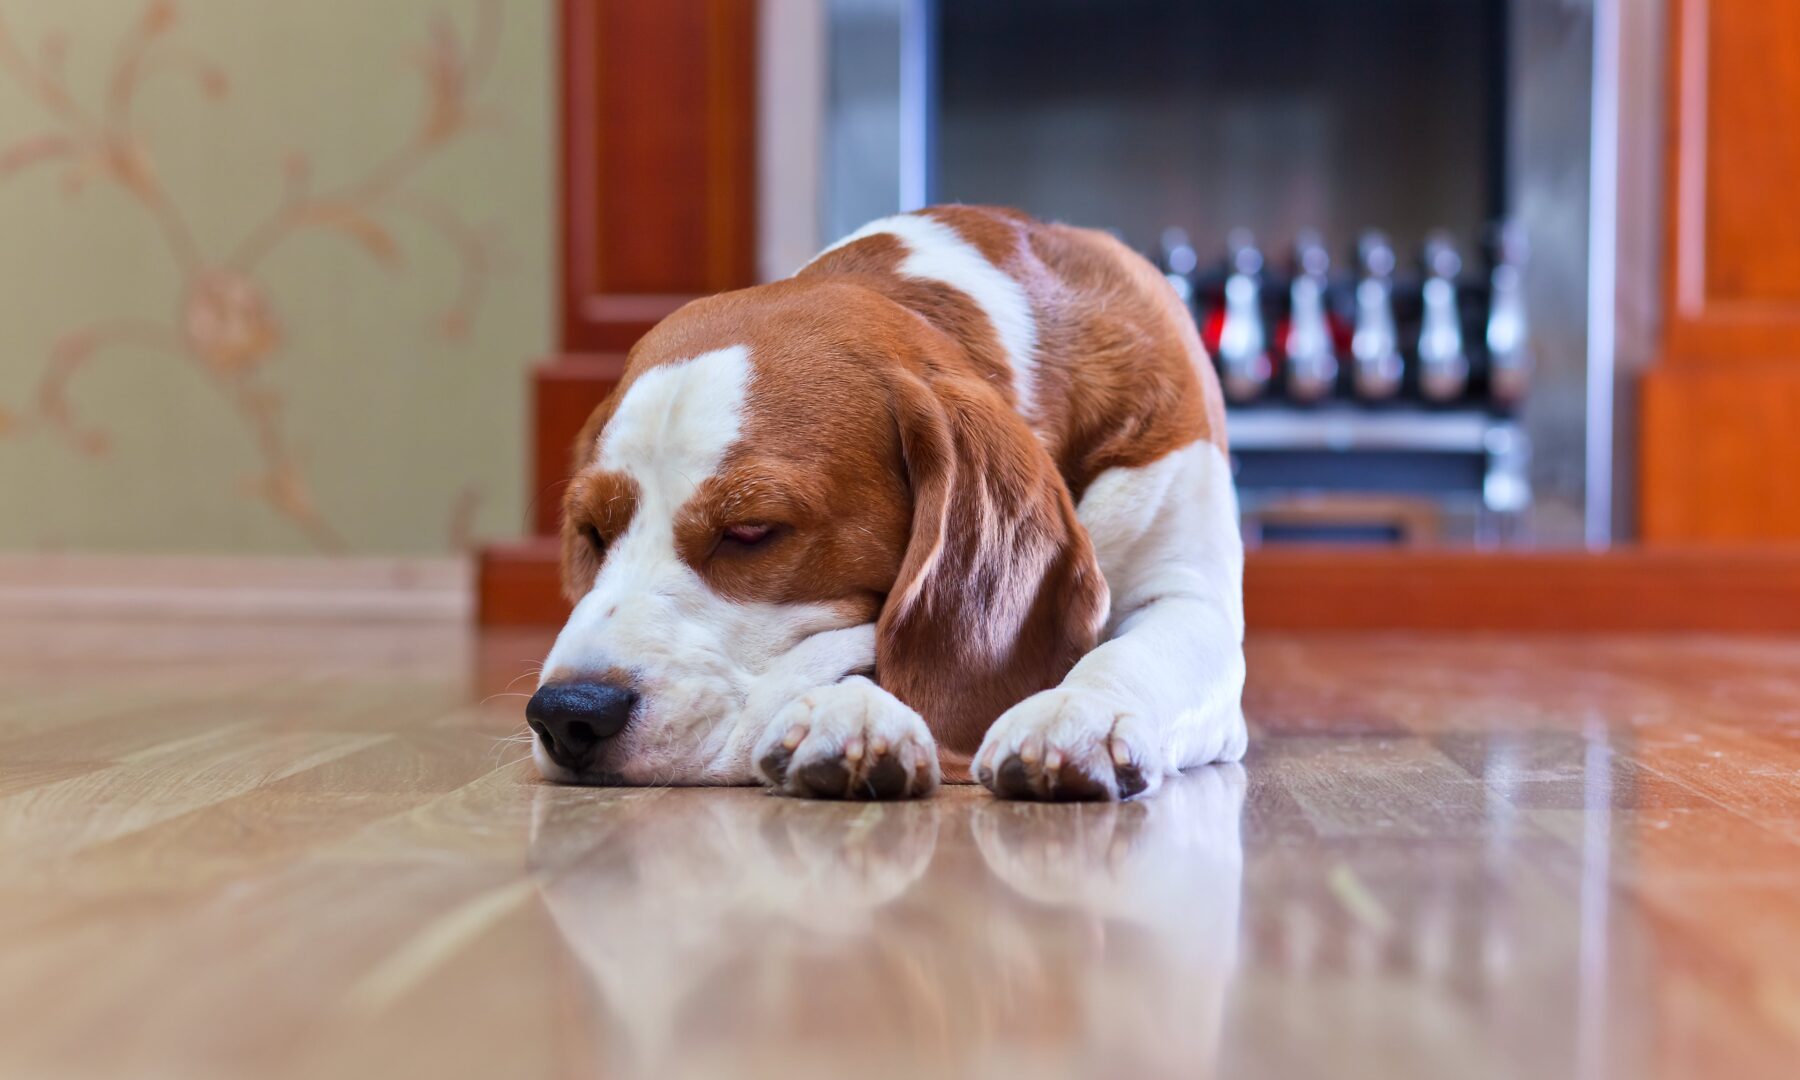 symptoms of caffeine overdose in dogs